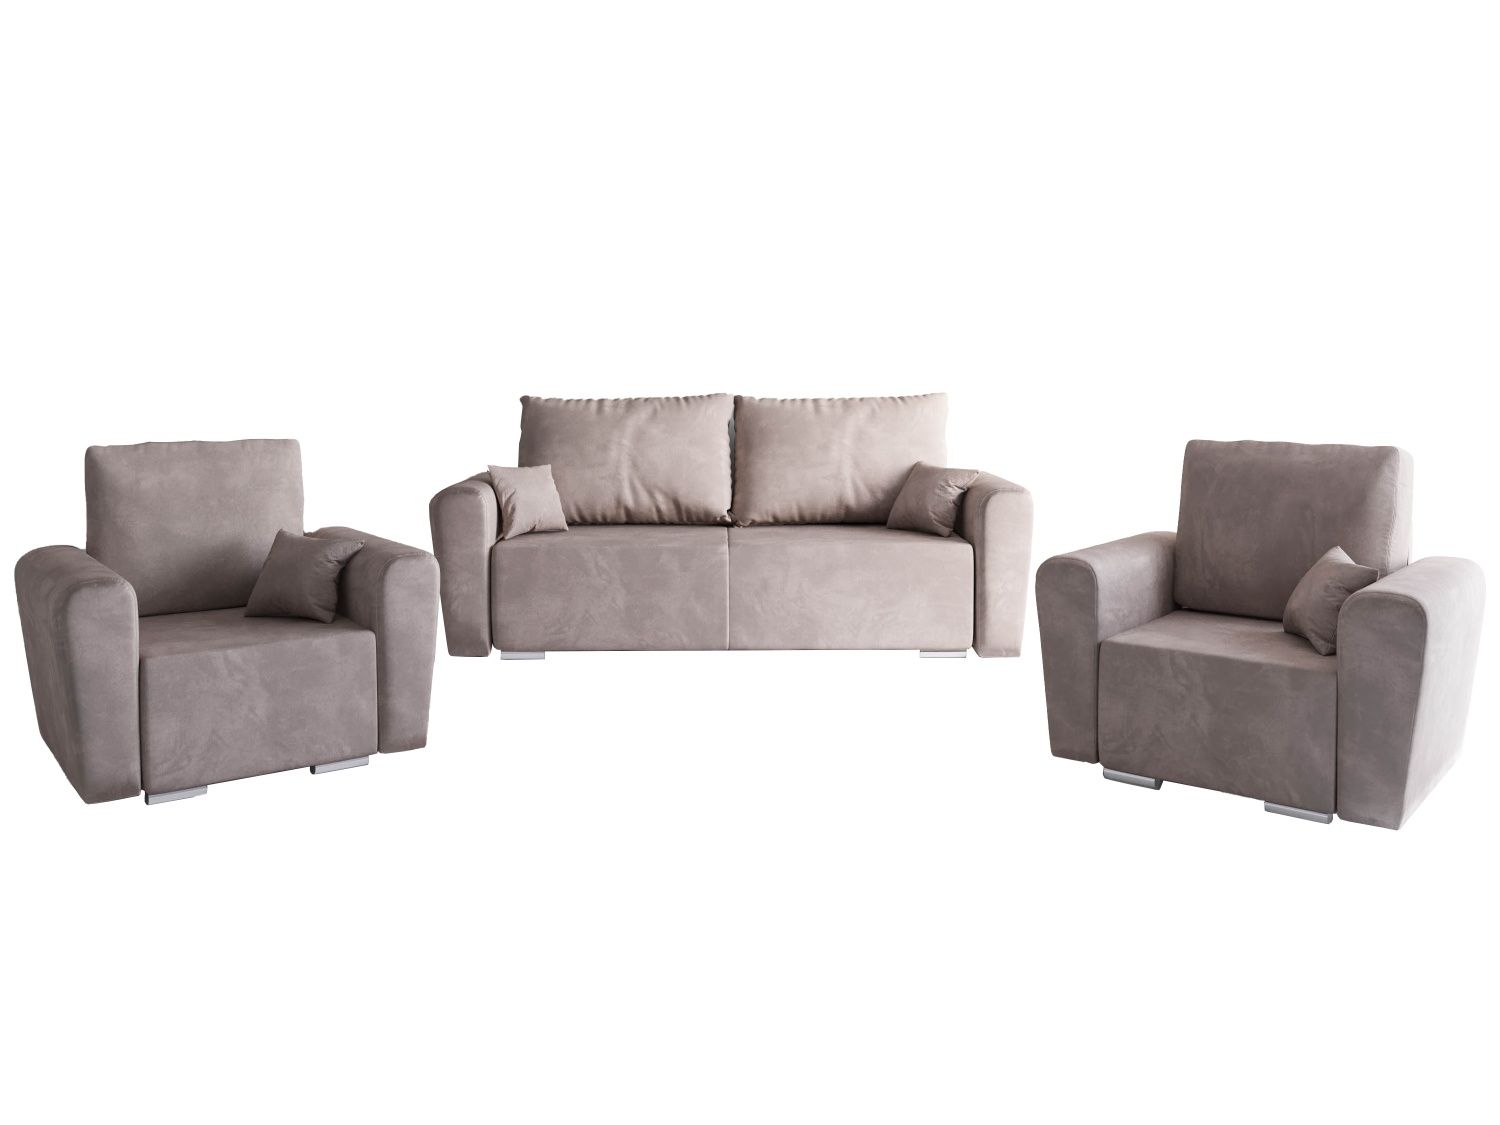 Zestaw wypoczynkowy sofa i dwa fotele prosto od producenta